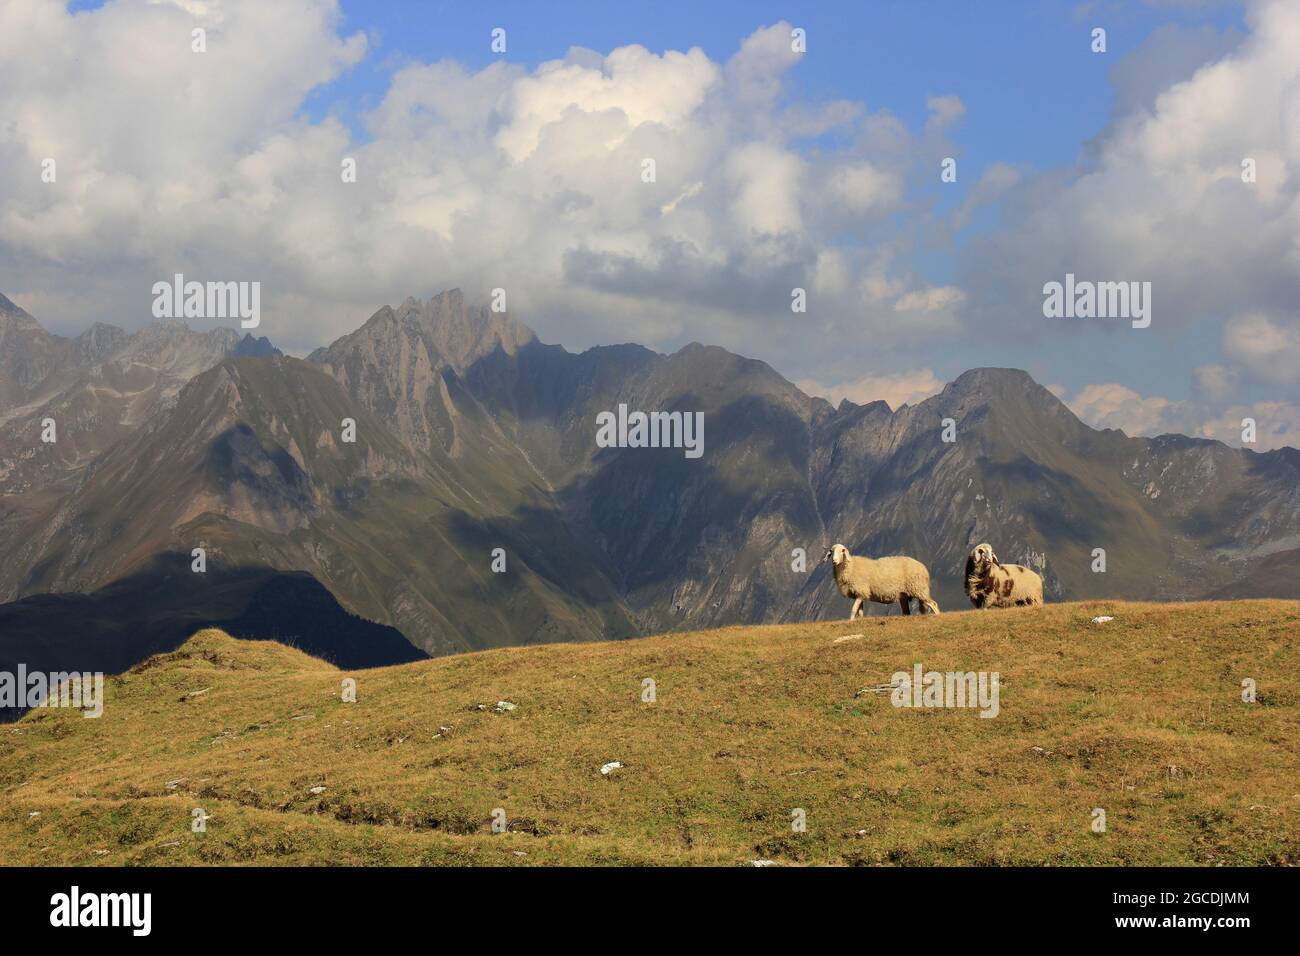 zwei Schafe, weiß und gefleckt, auf einer Alm in einer von schattenwerfenden Wolken durchzogenen Bergwelt der Pfunderer Berge in Südtirol Banque D'Images